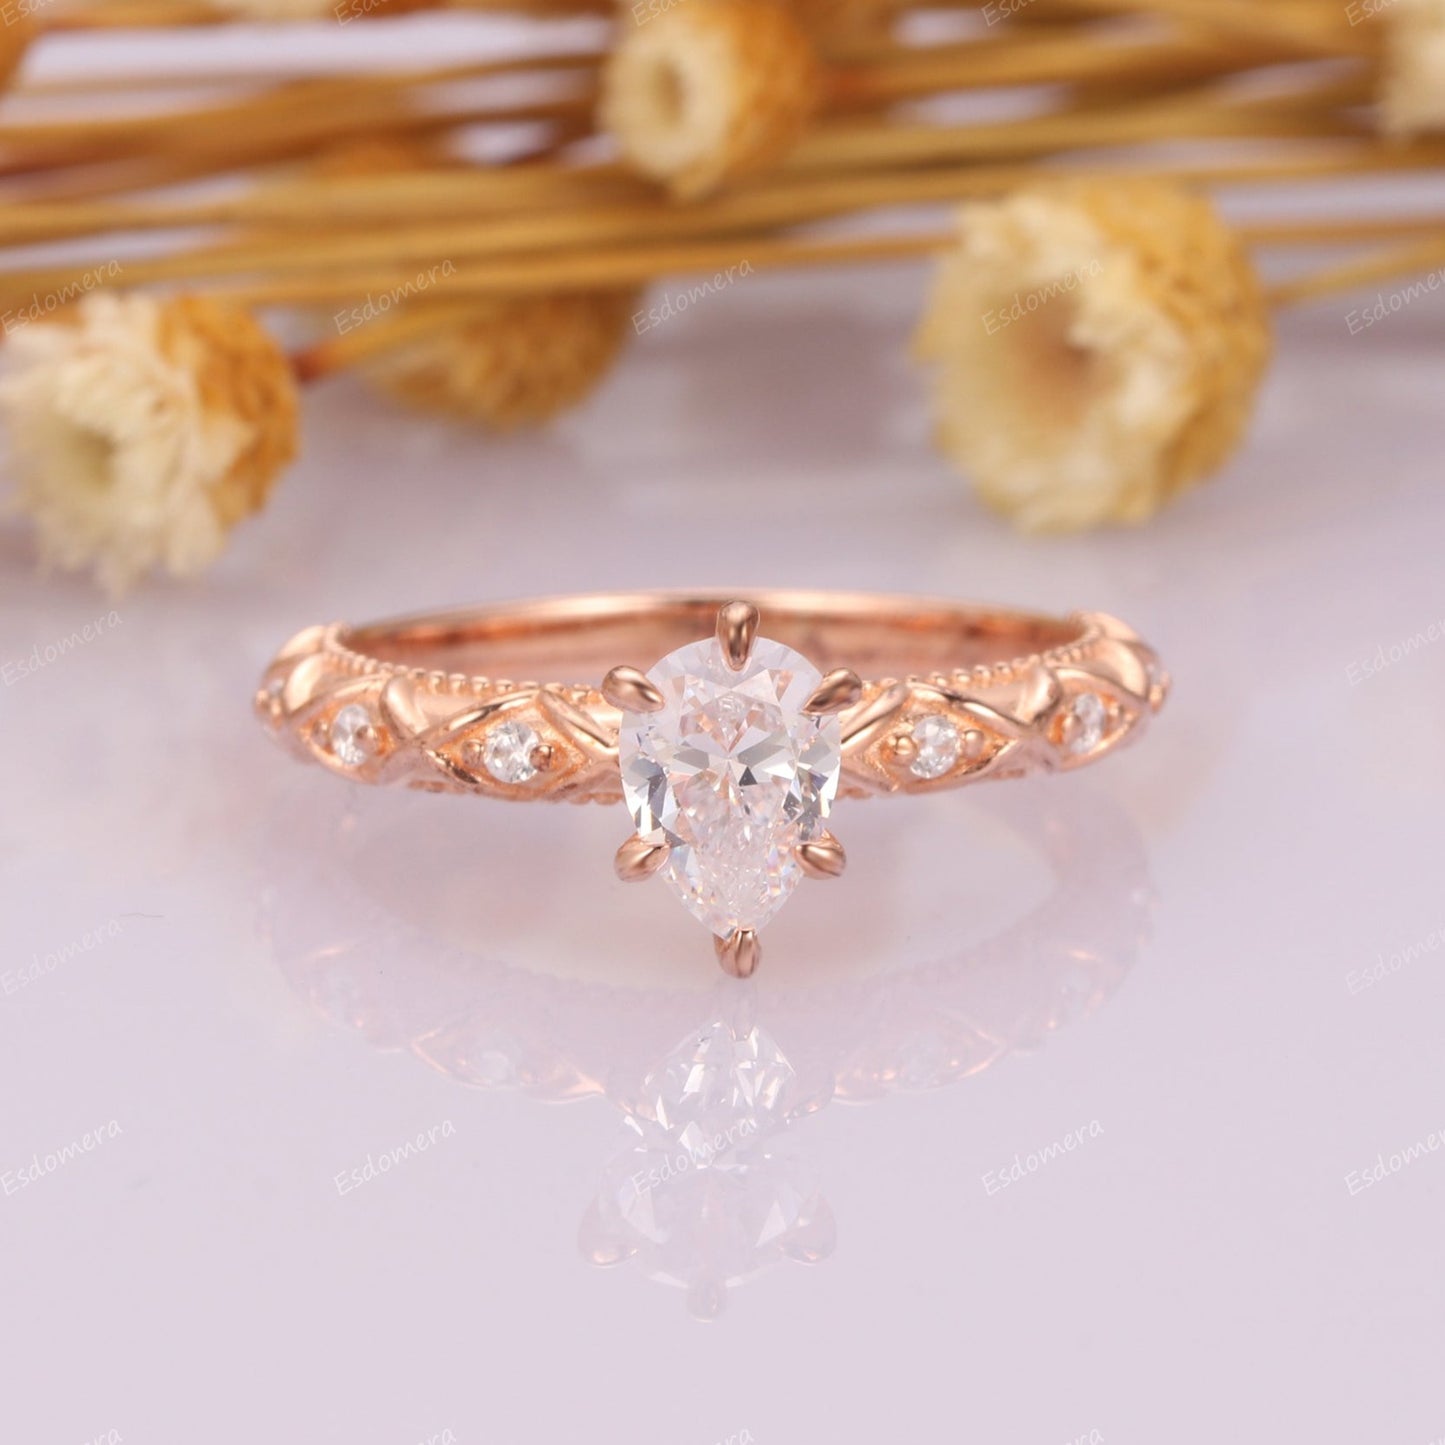 6 Prongs Pear Cut Moissanite Promise Ring For Women, 14k Rose Gold Milgrain Wedding Ring, Half Eternity Anniversary Ring